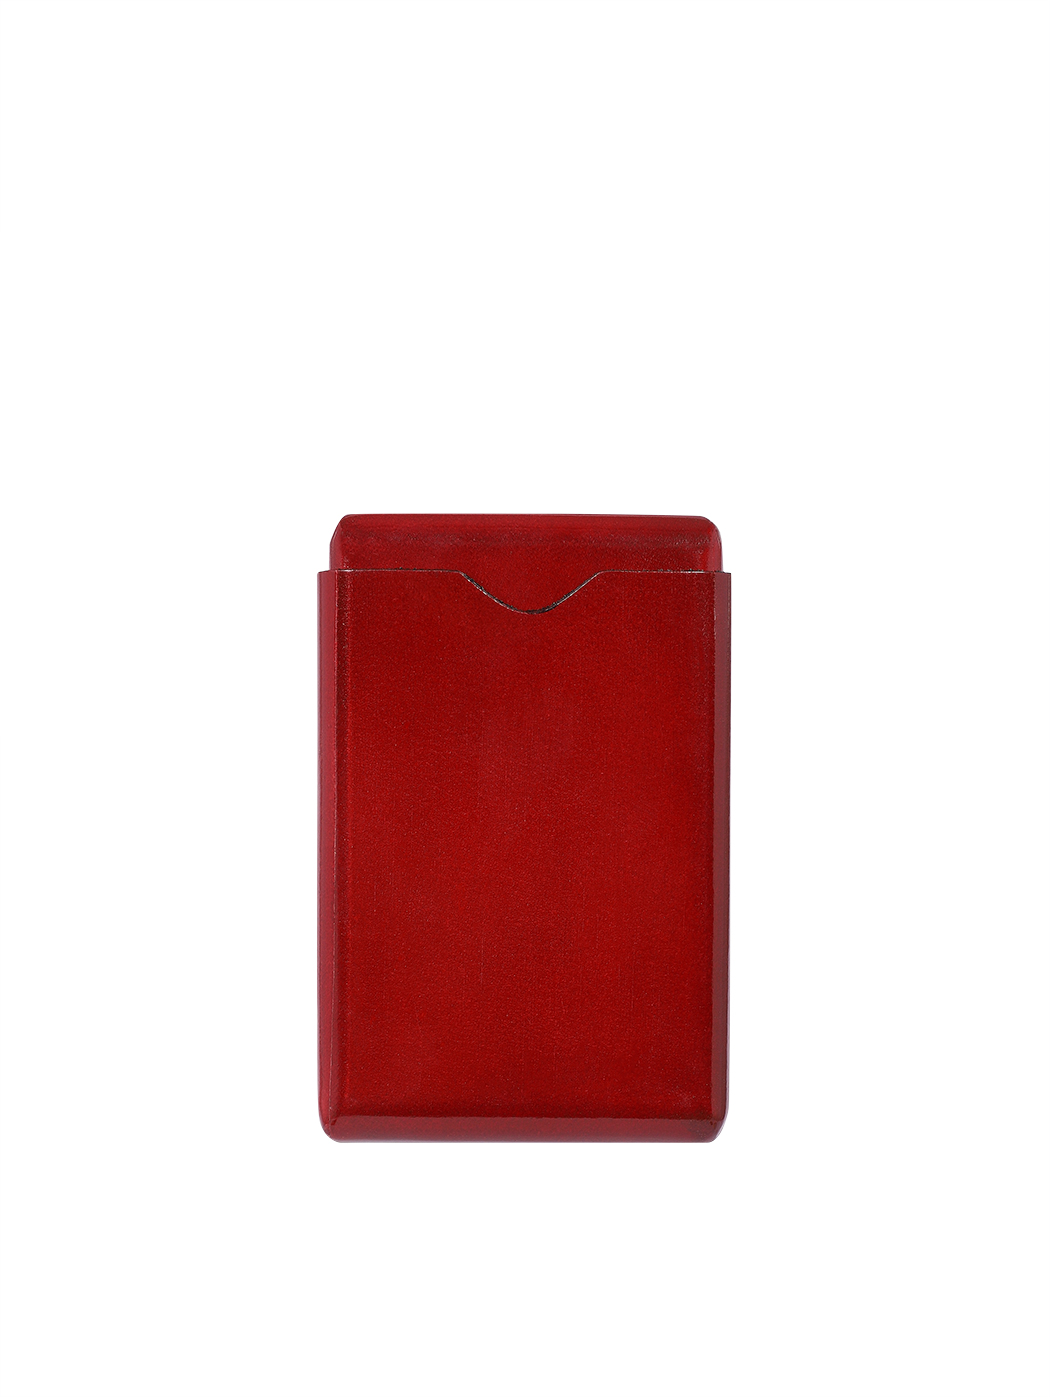 Кожаный футляр для визитных карточек красного цвета